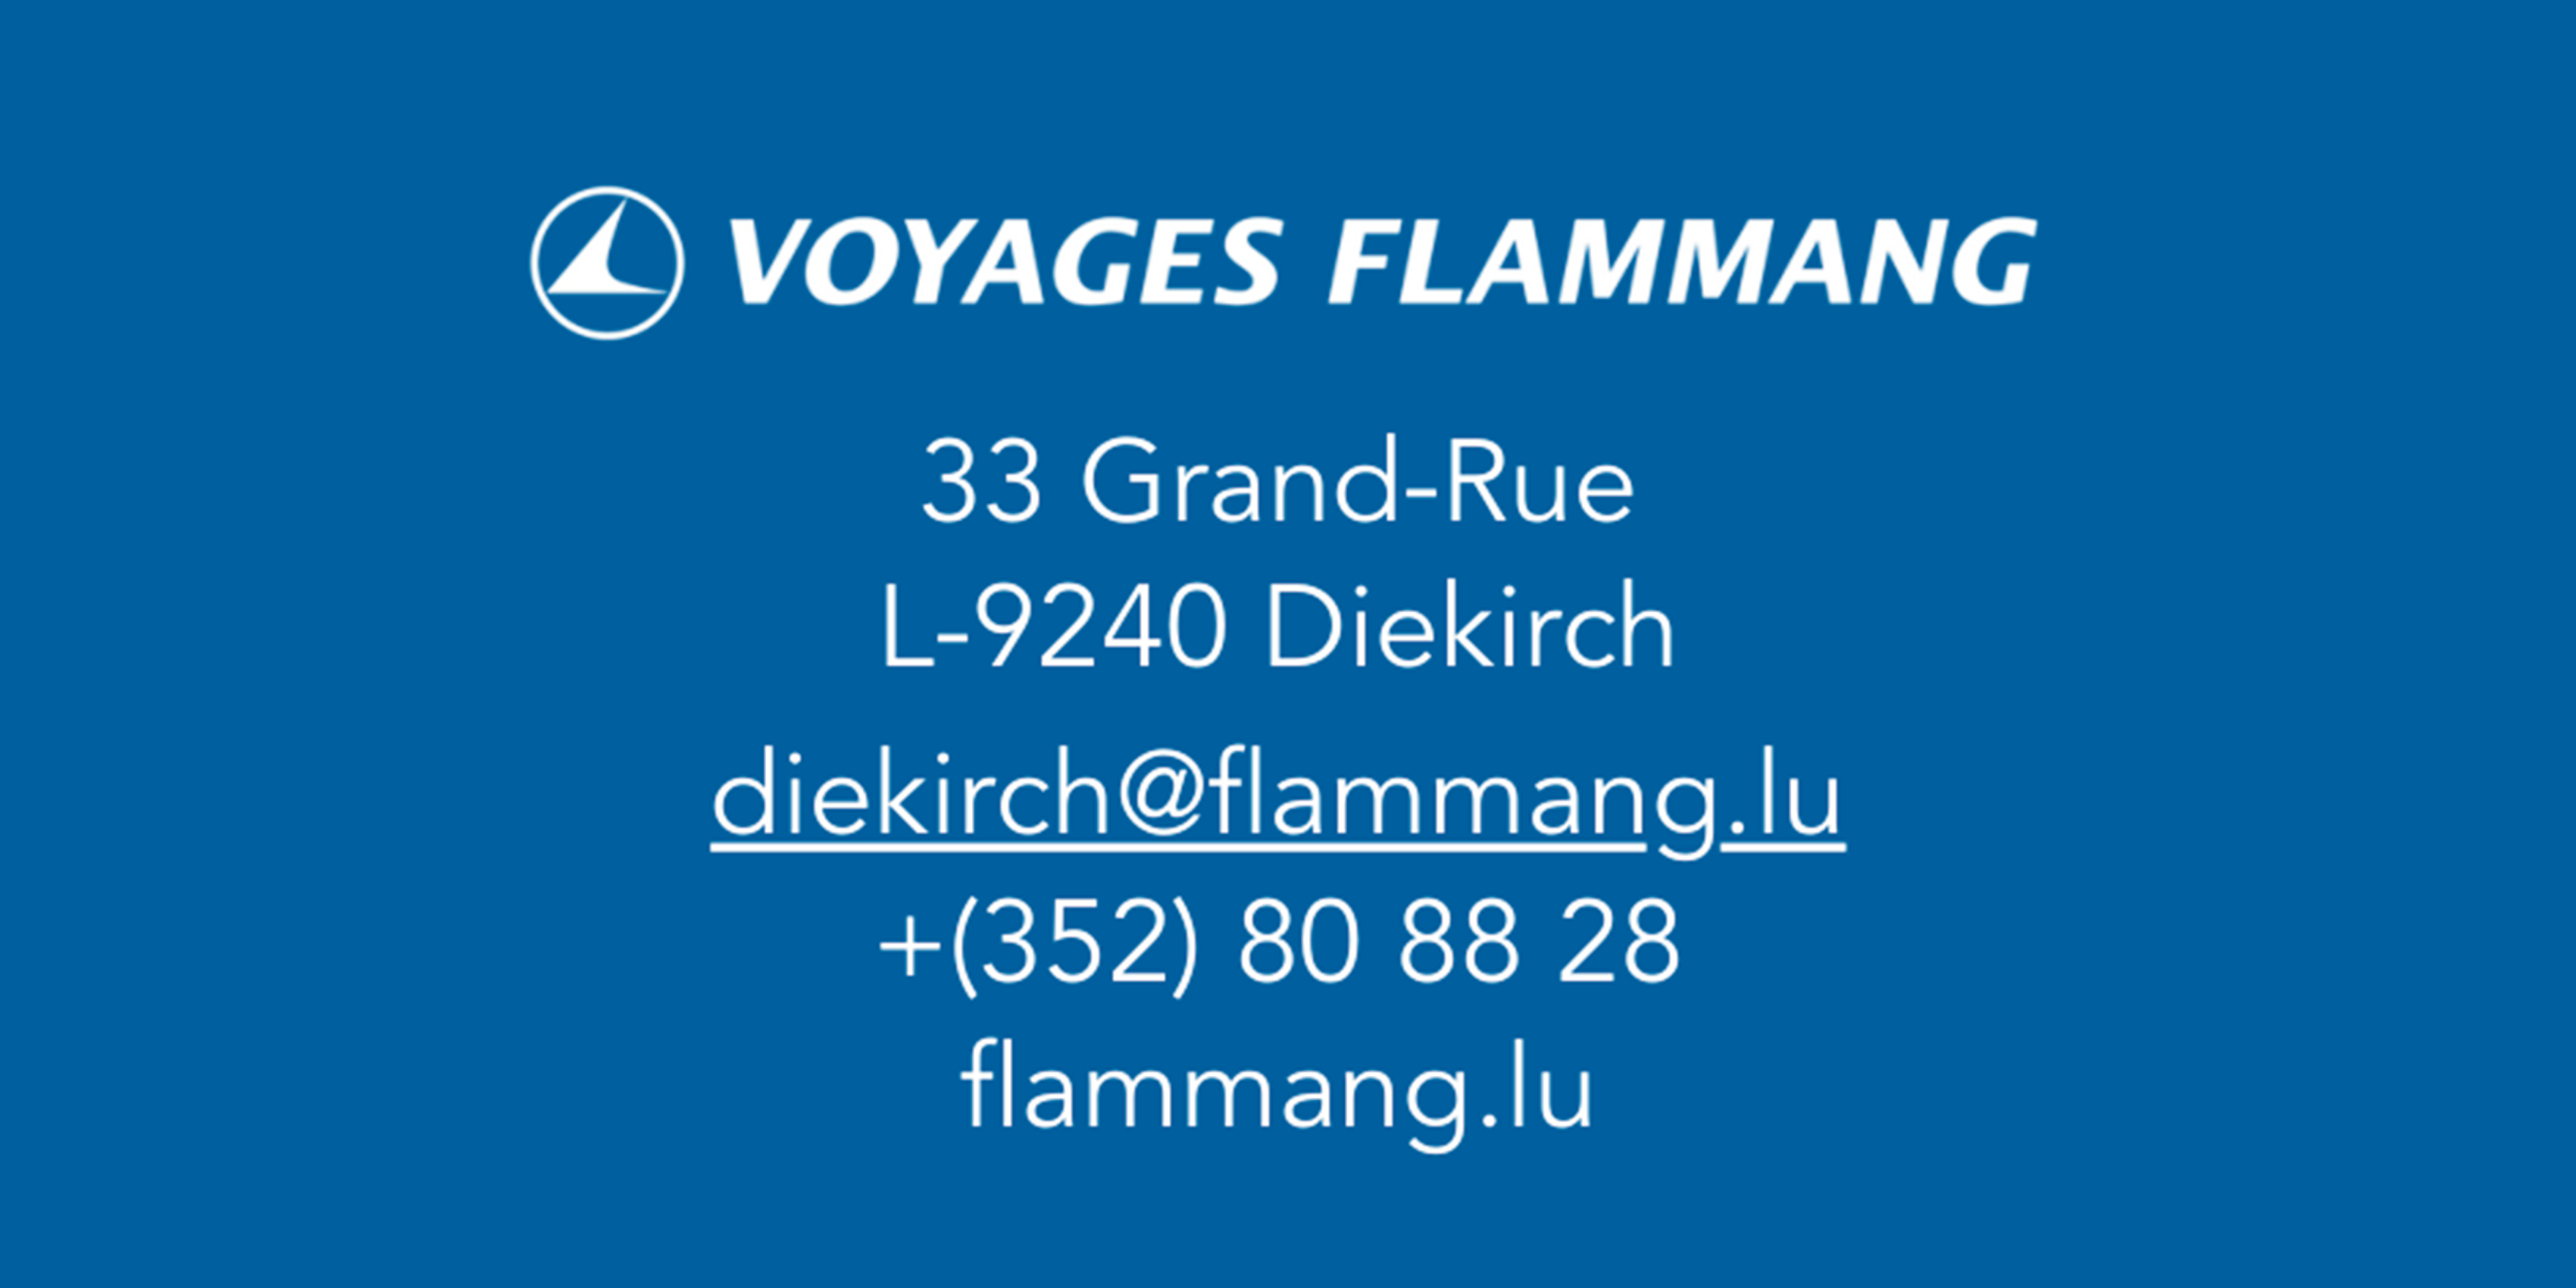 Voyages Flammang